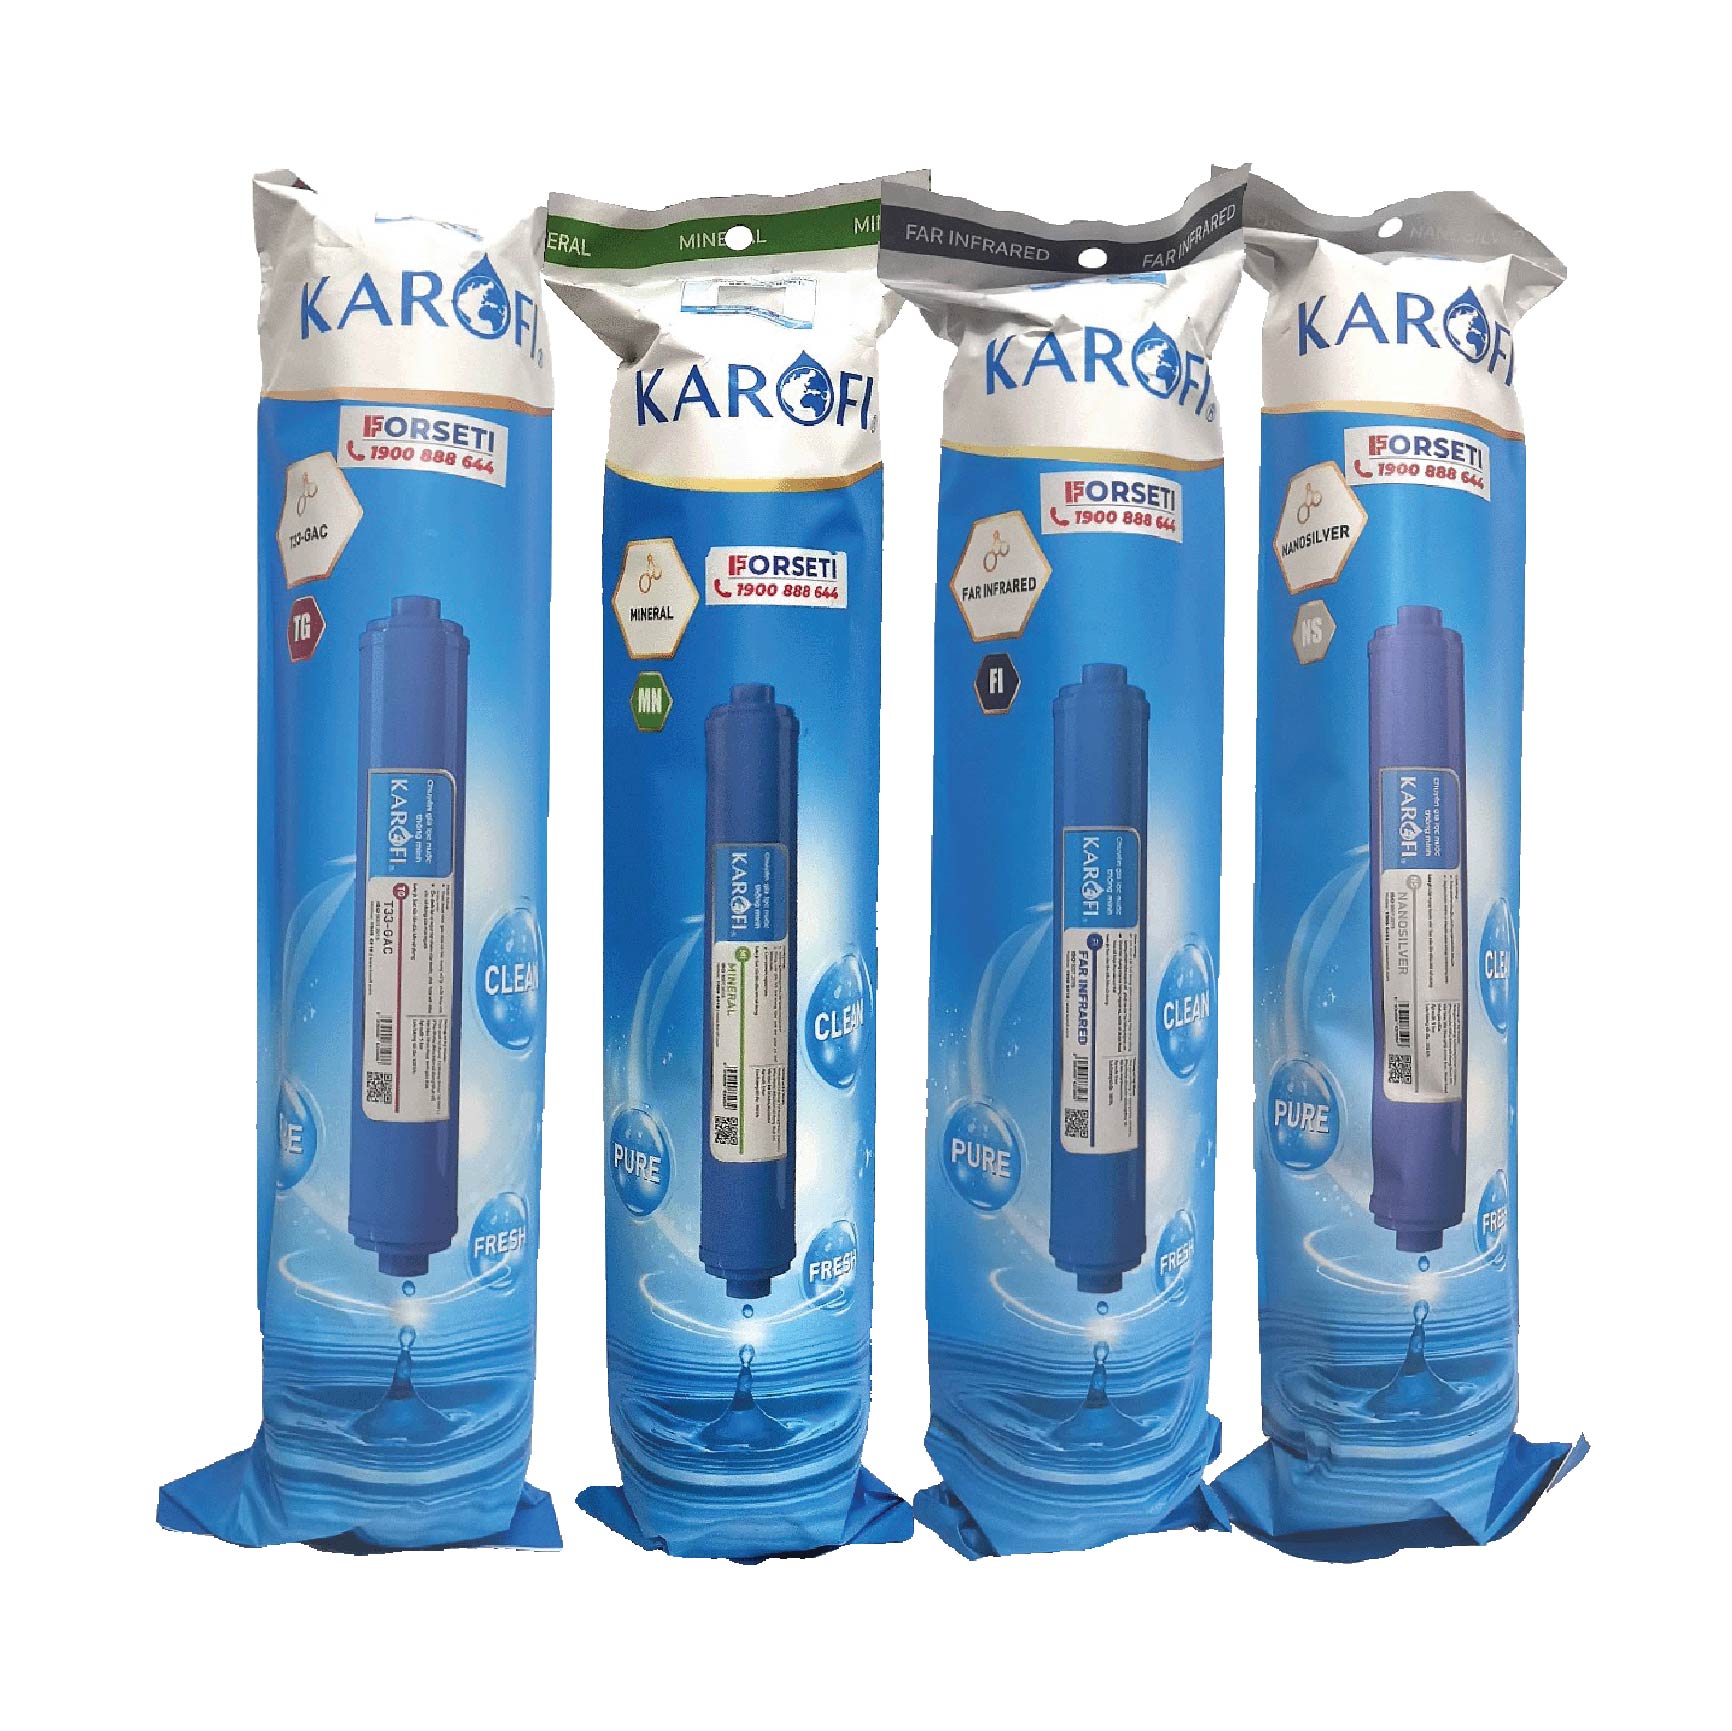 Combo 8 lõi lọc nước Karofi chính hãng dùng cho máy lọc nước Karofi K-i238 - Hàng Chính Hãng